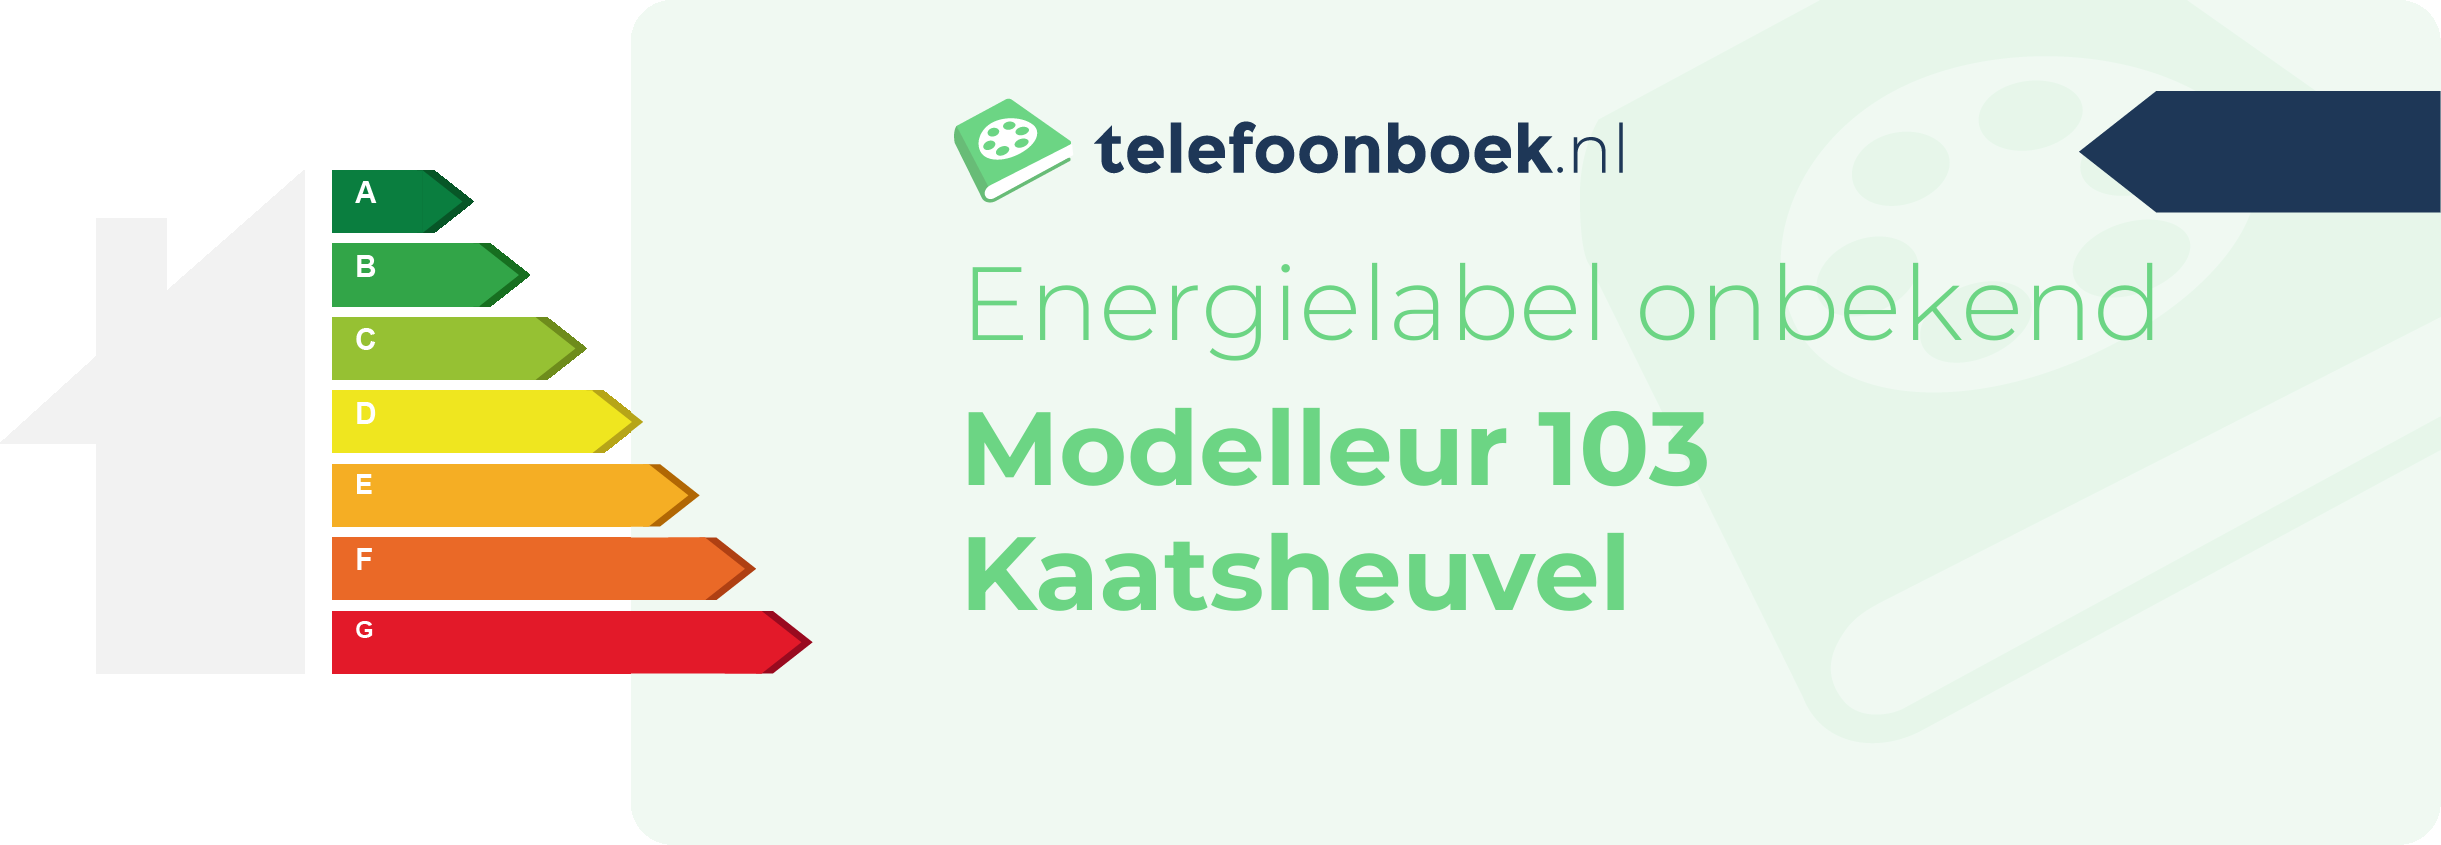 Energielabel Modelleur 103 Kaatsheuvel